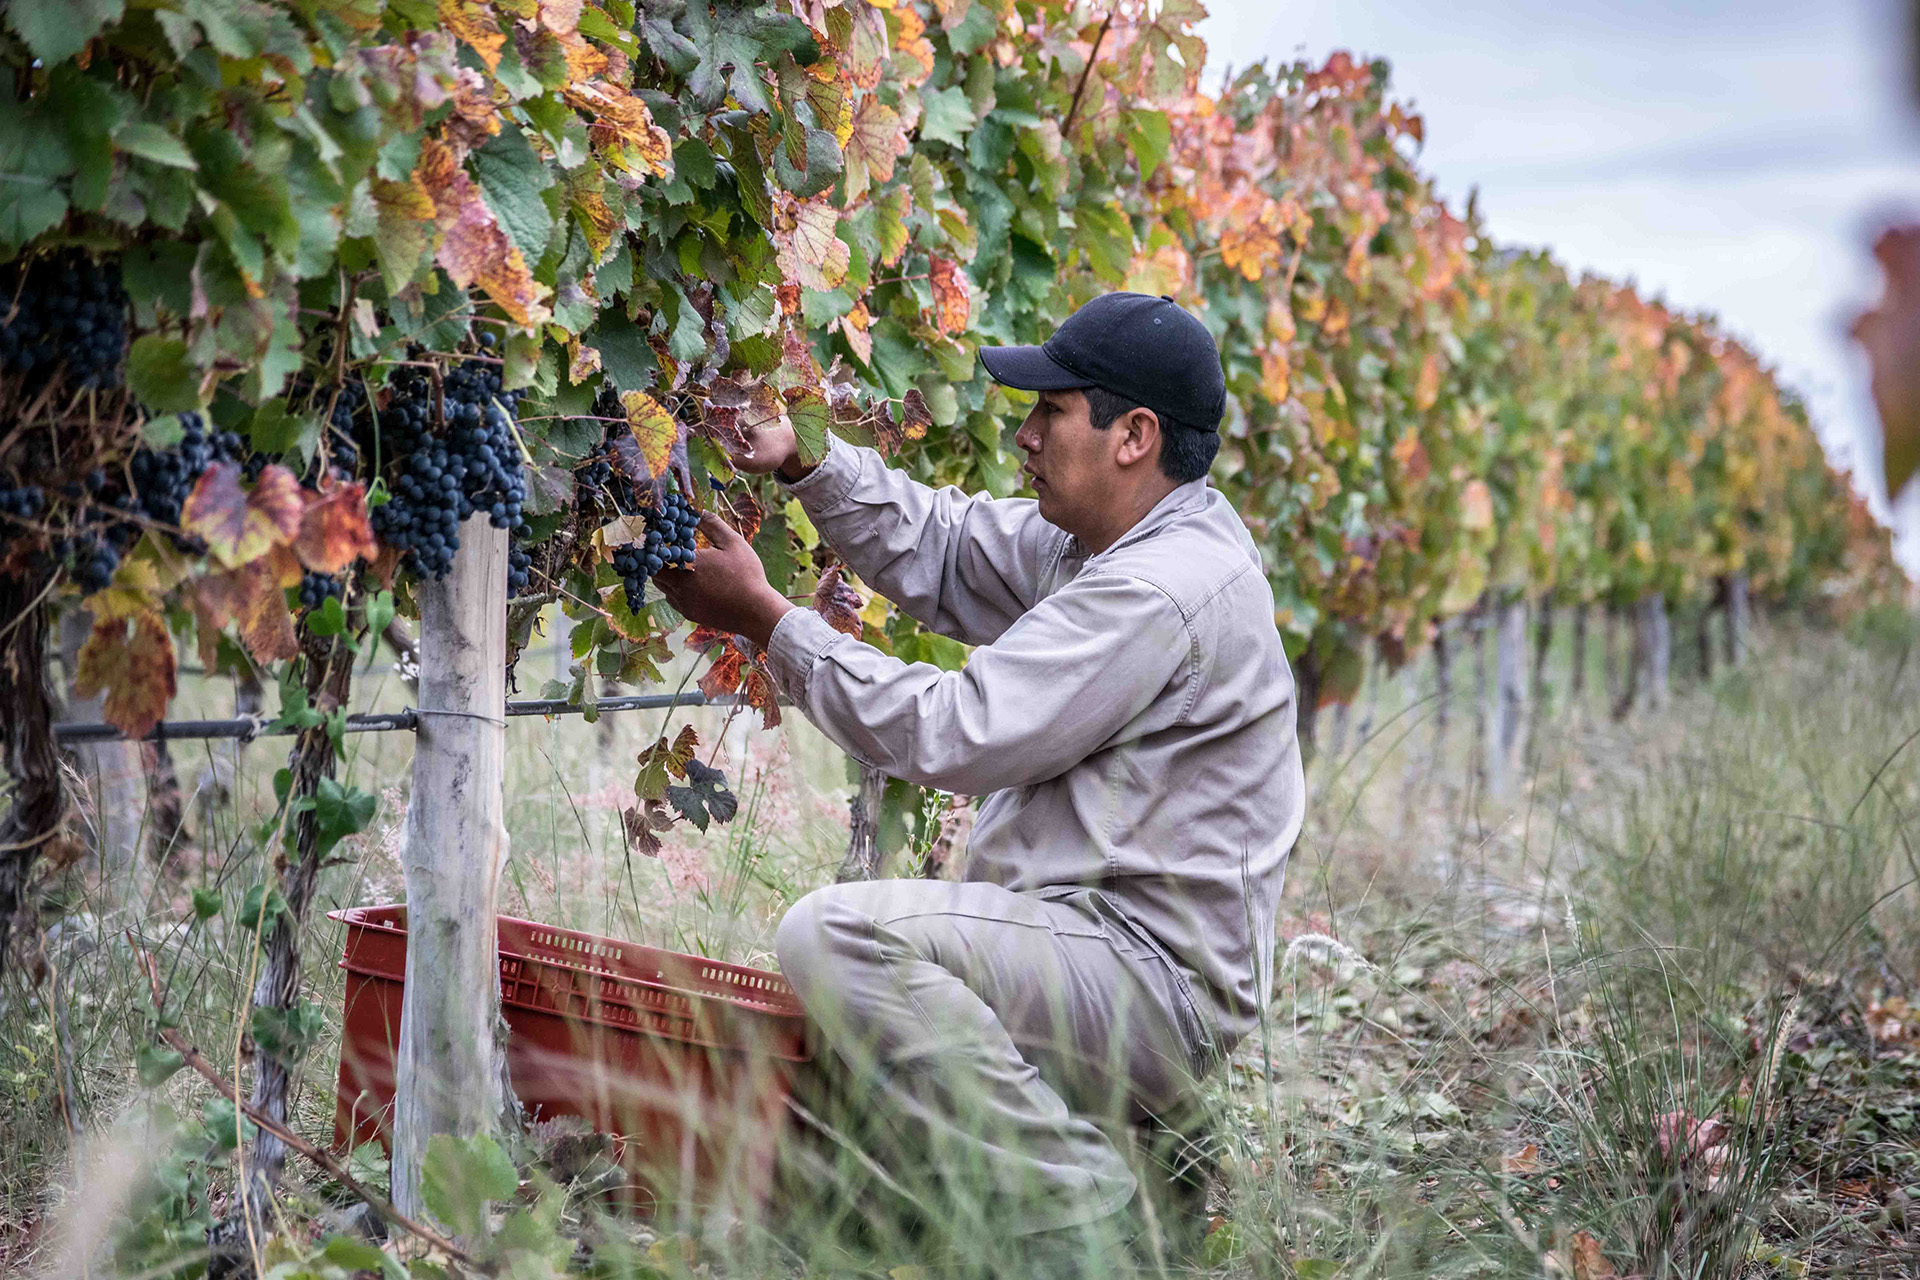 Otra de las familias tradicionales y referentes del vino salteño son los Dávalos. Incluso ellos, reconocidos por sus vinos concentrados